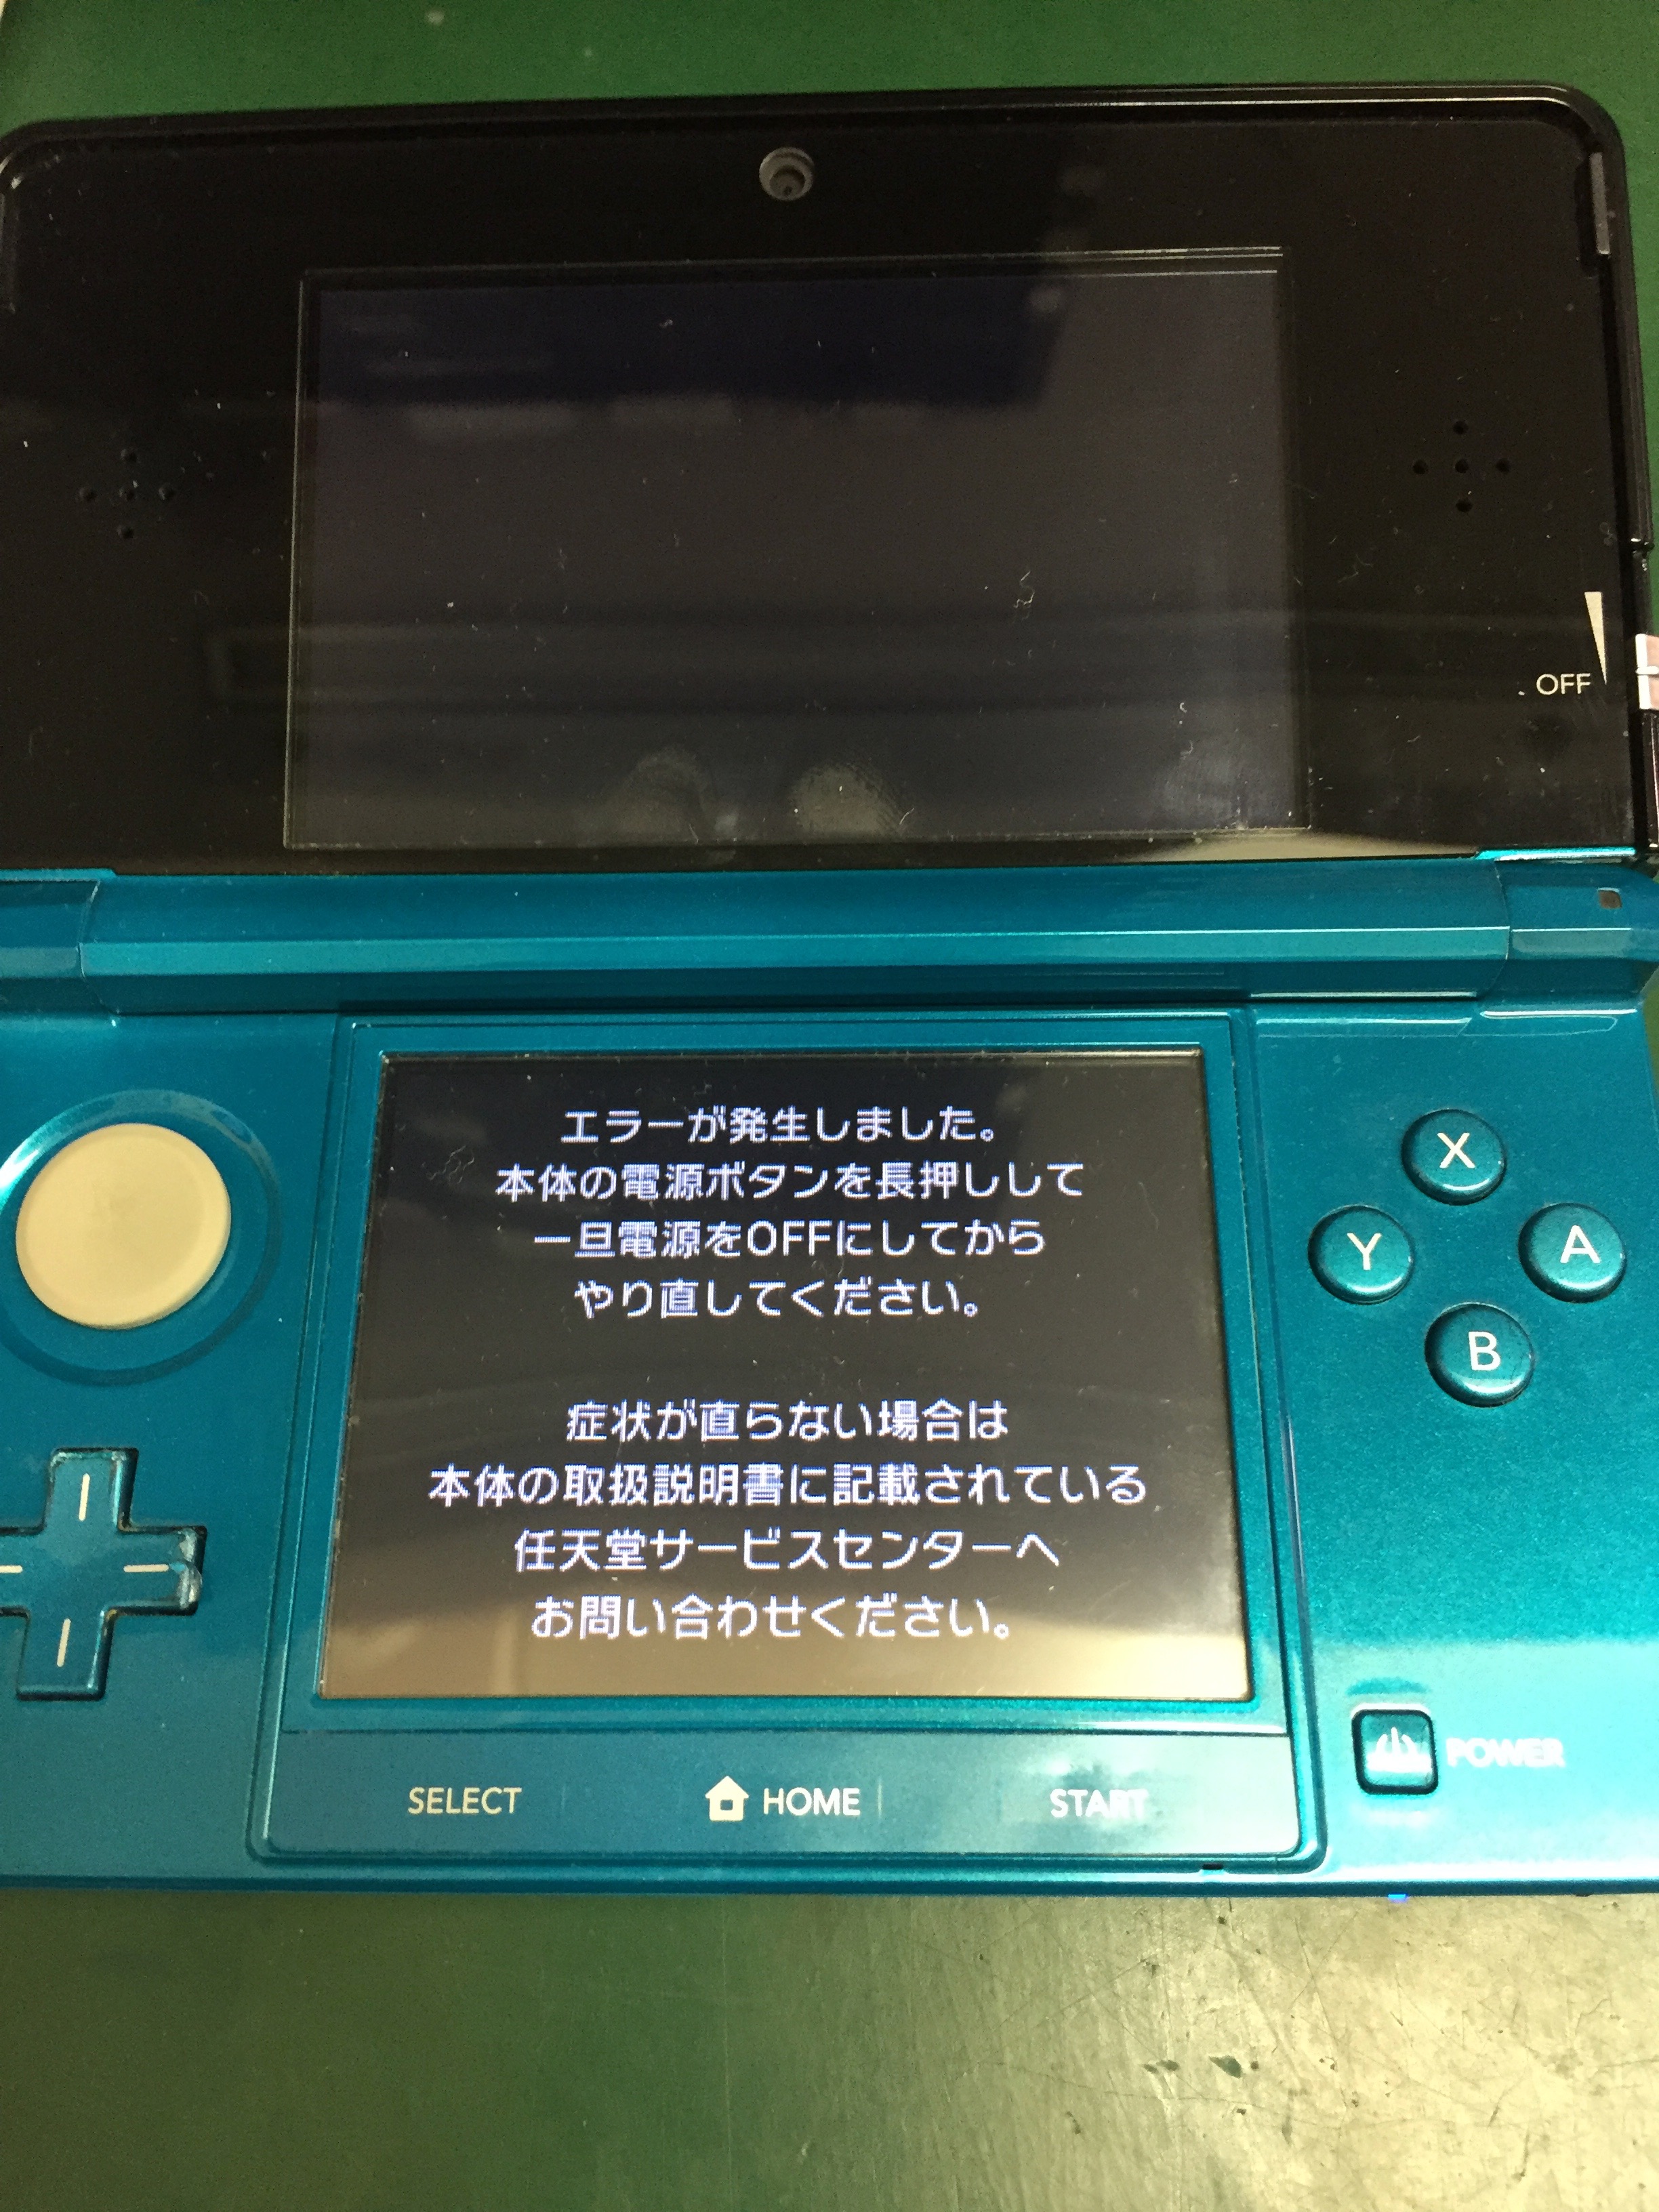 3dsエラー表示がでてきた Nintendo3ds Switch Psp 修理のゲームホスピタル Nintendo3ds ニンテンドーds Psp 修理